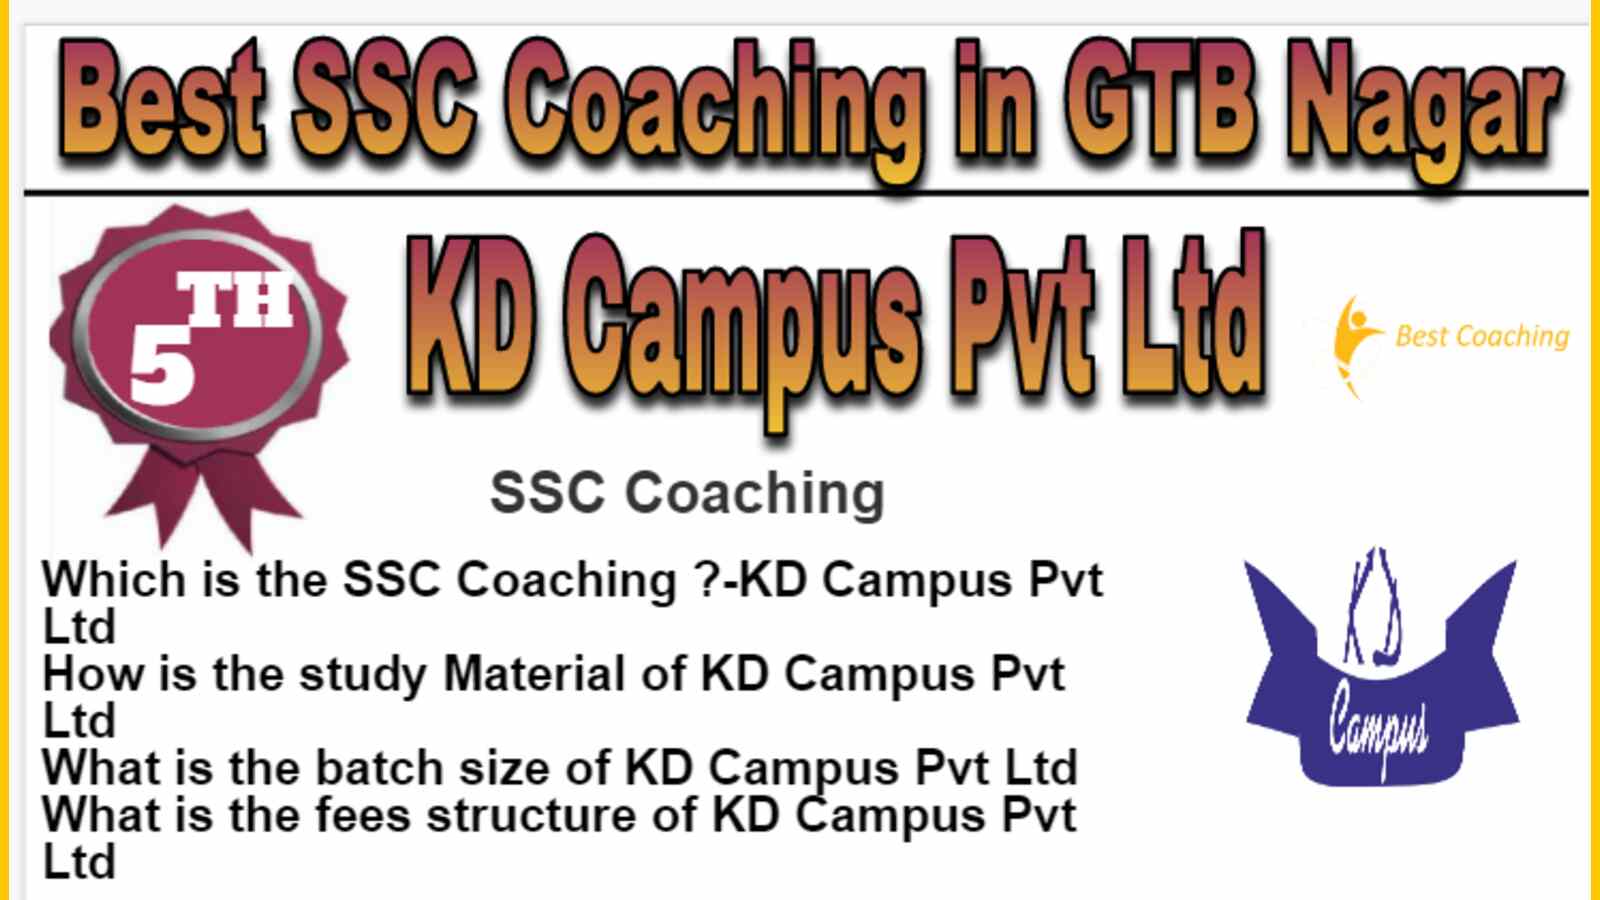 Rank 5 Best SSC Coaching in GTB Nagar